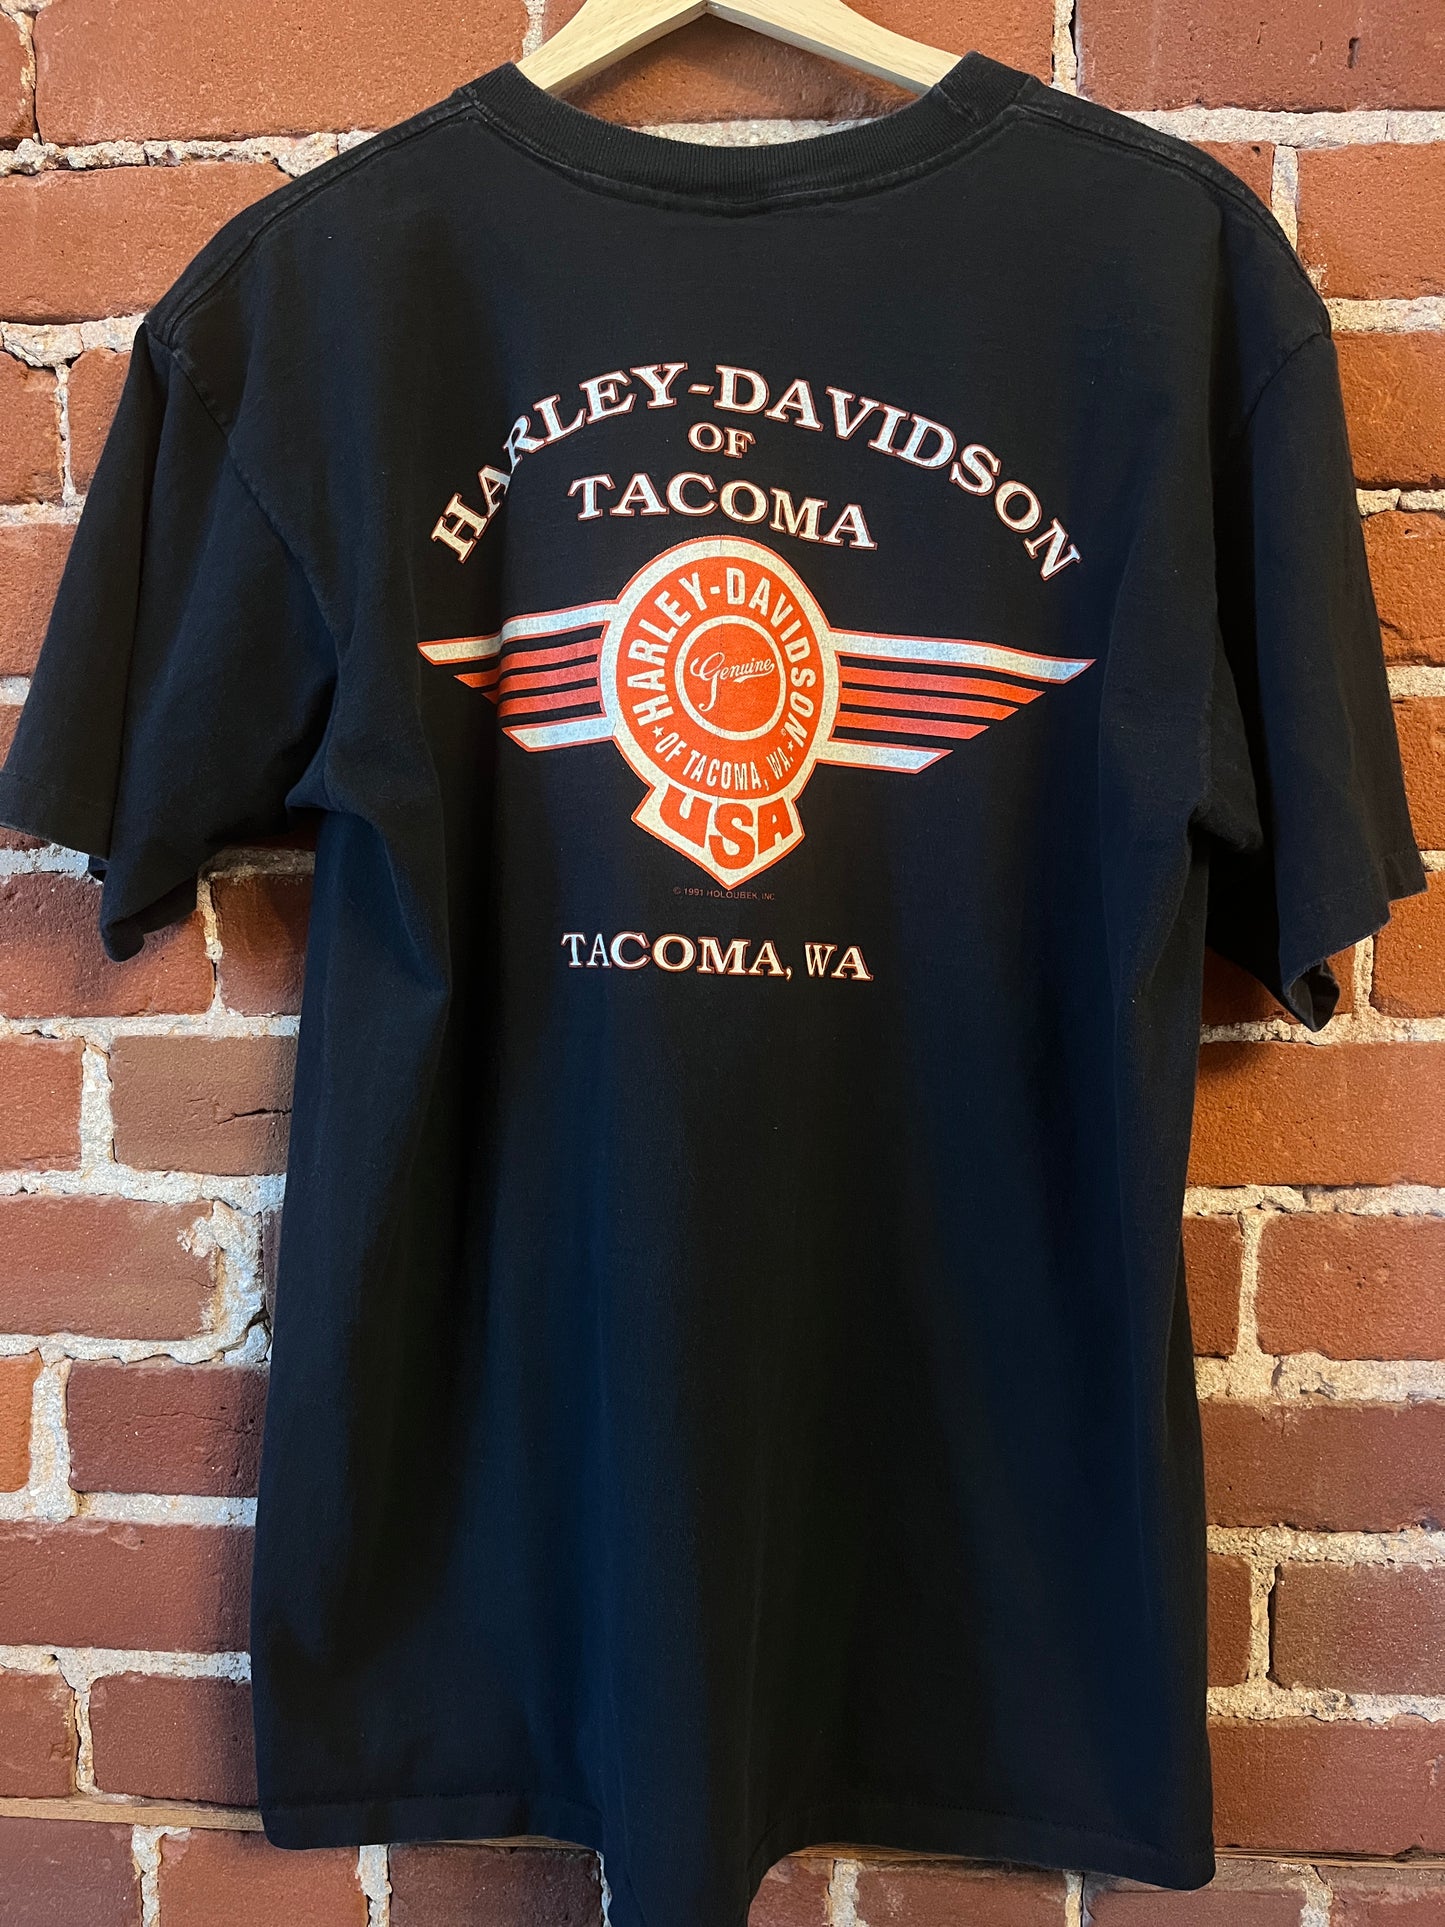 Harley Davidson Motorcylces graphic of Tacoma, Washington '92